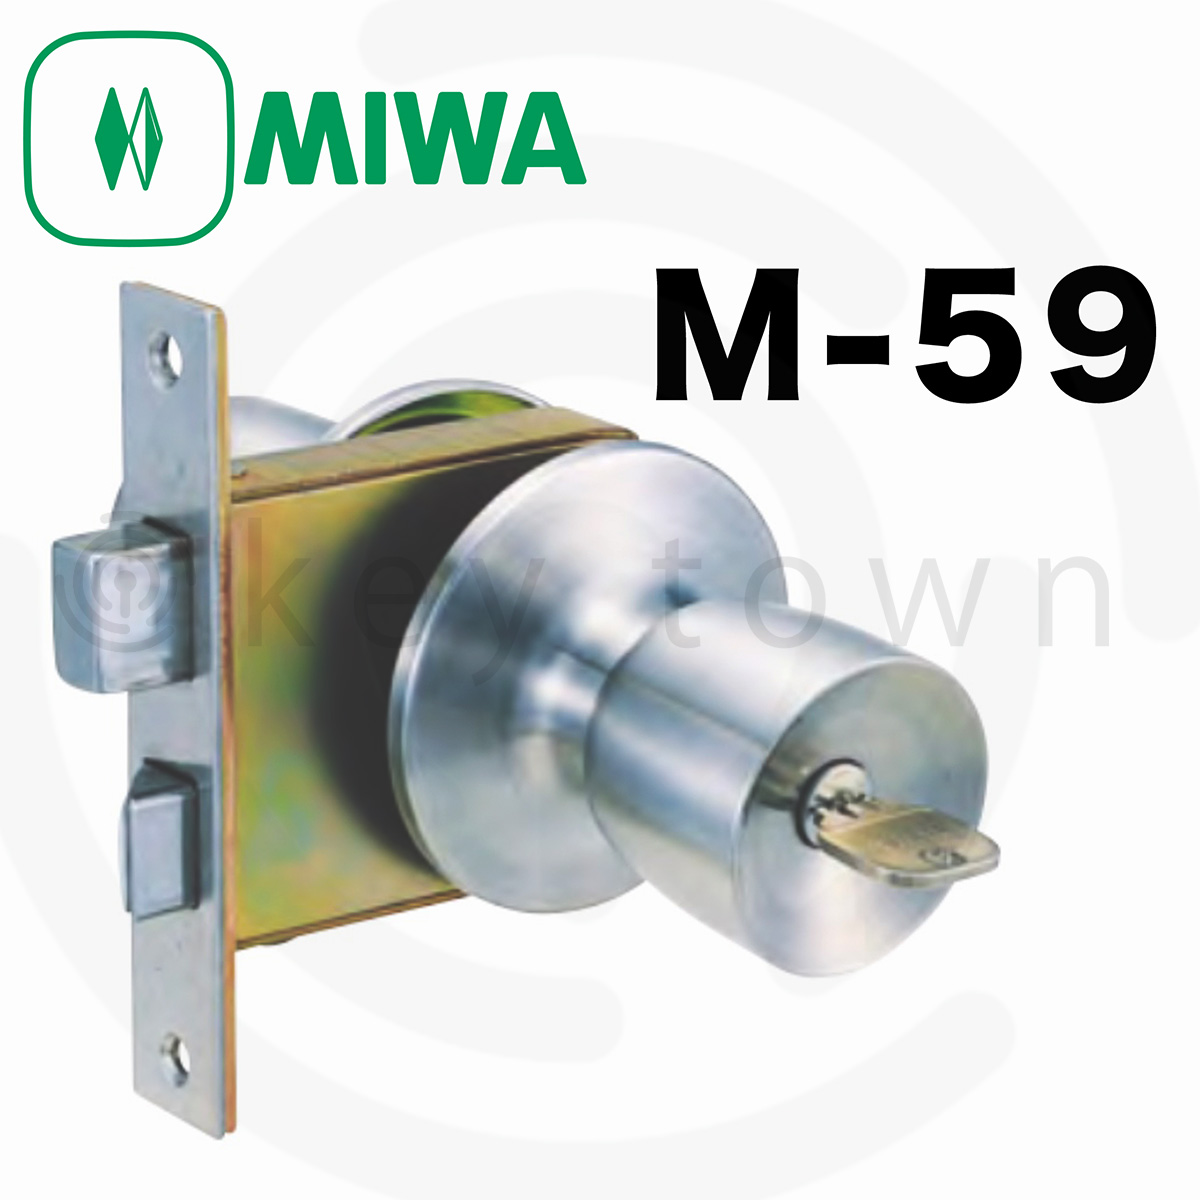 高級ブランド ミズタニ M-80 MIWA特殊錠 : 材料、部品